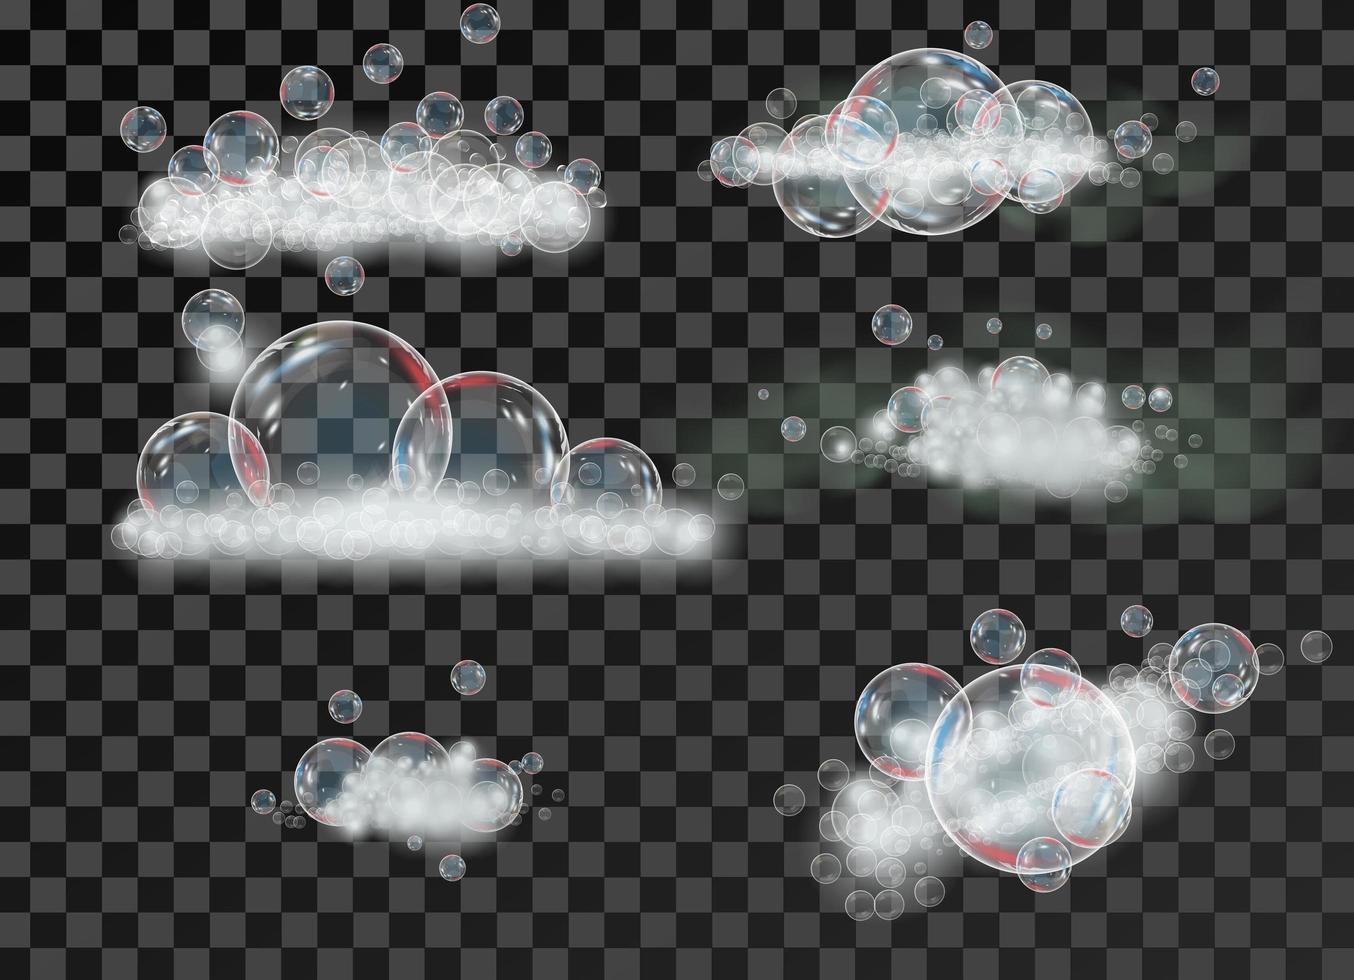 Schaum in Seifenblasen auf einem isolierten Mesh-Hintergrund. funkelnde Shampoo- und Badeschaum-Vektorillustration. vektor